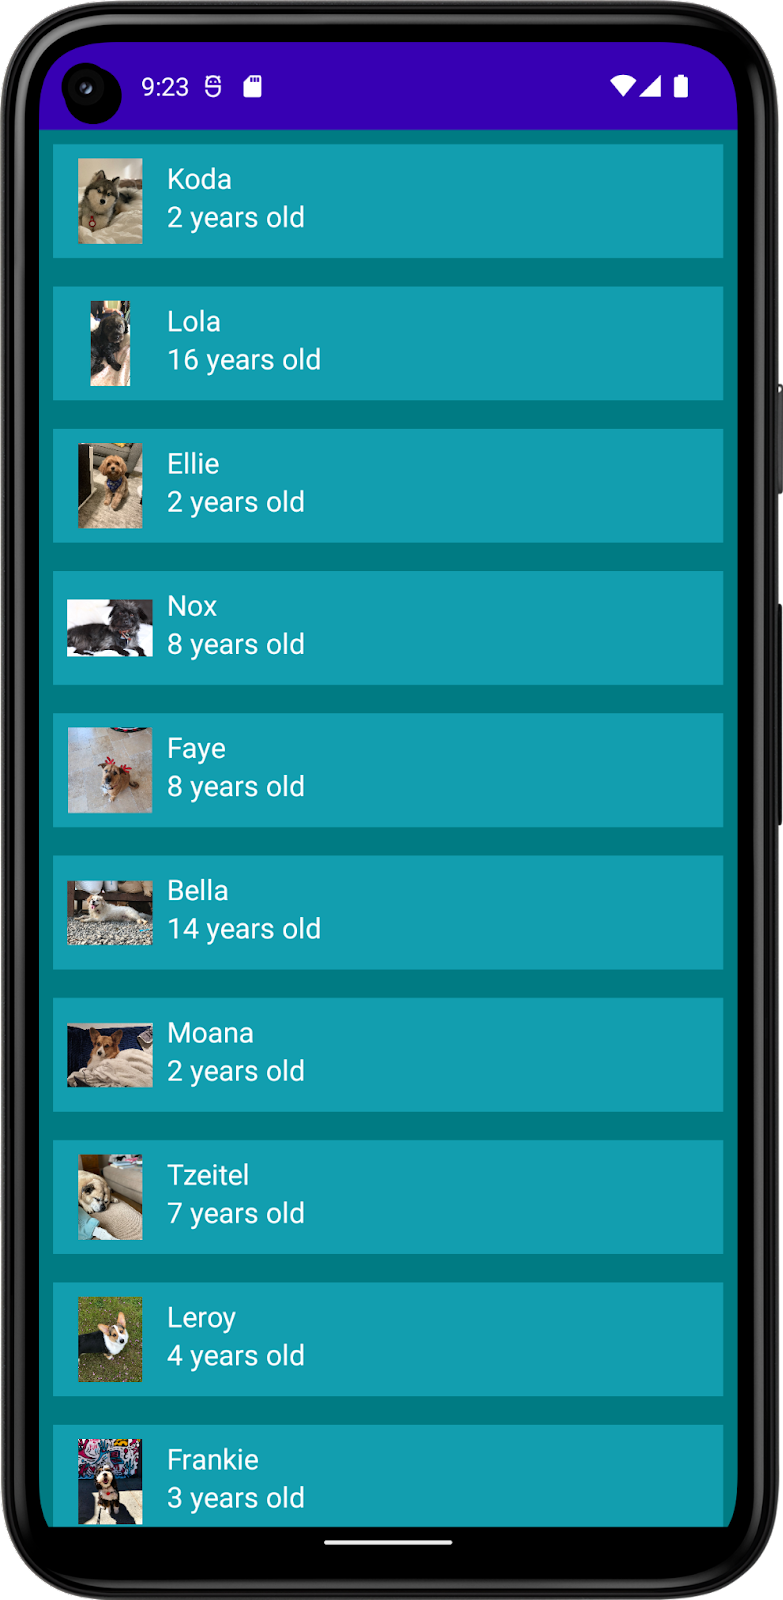 반려견의 이름, 사진, 나이 목록이 표시된 앱을 보여주는 이미지입니다. 이 앱에는 앱 배경색, 목록 항목 배경색과 텍스트 색상이 적용되어 있습니다. 어두운 테마가 설정되어 있습니다.